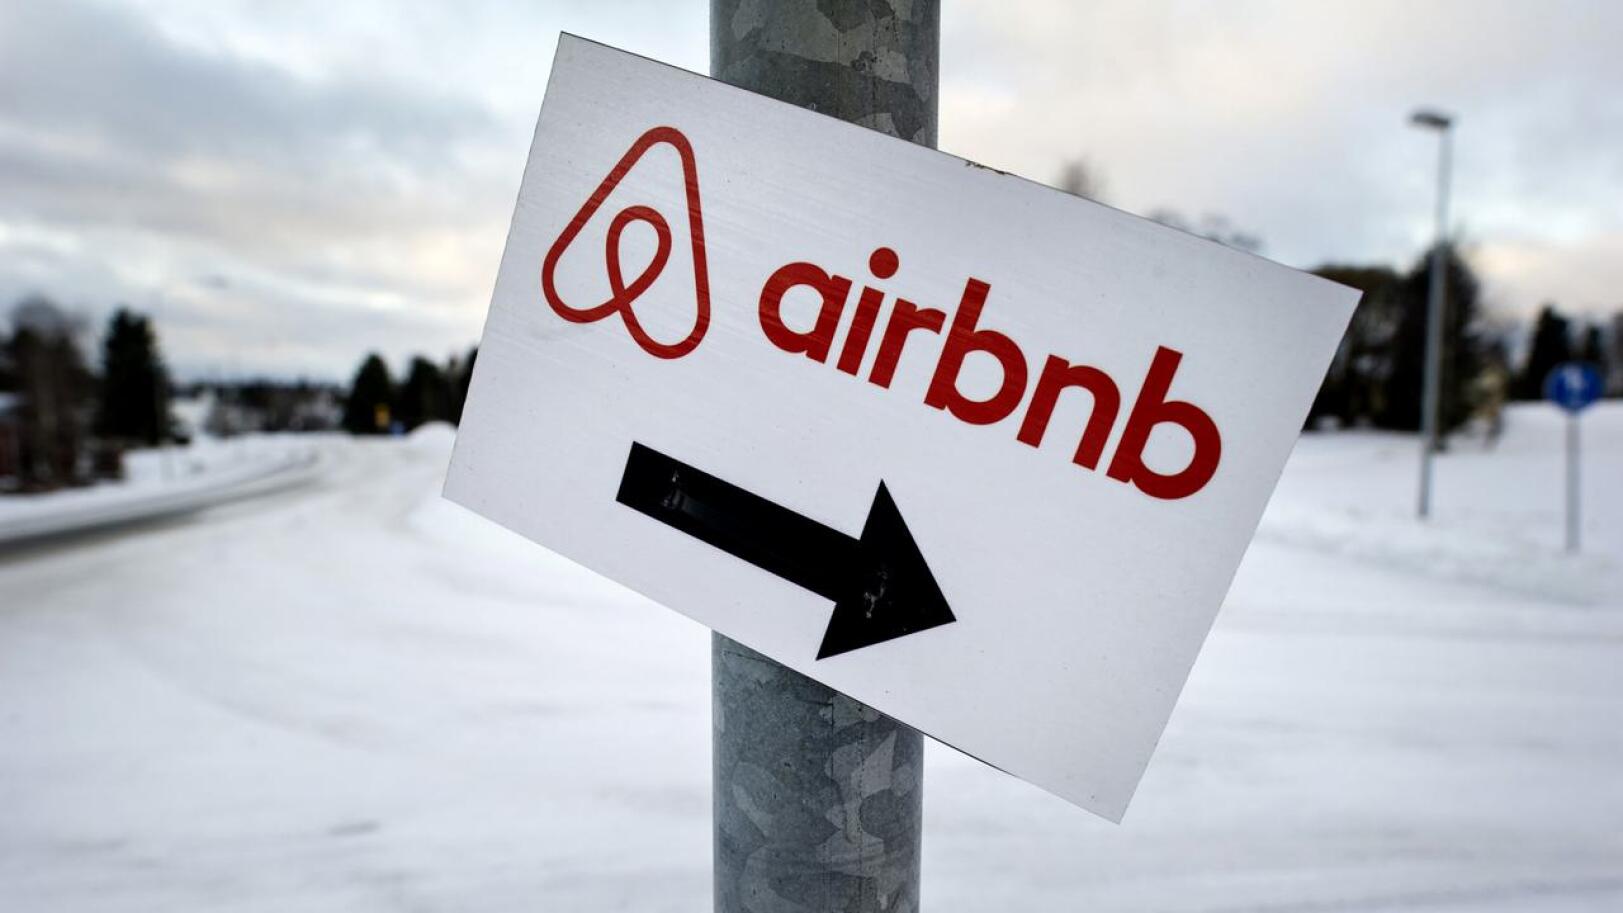 Airbnb-vuokraus on palvelu, jonka kautta voi vuokrata asunnon käyttöön lyhyeksi aikaa.